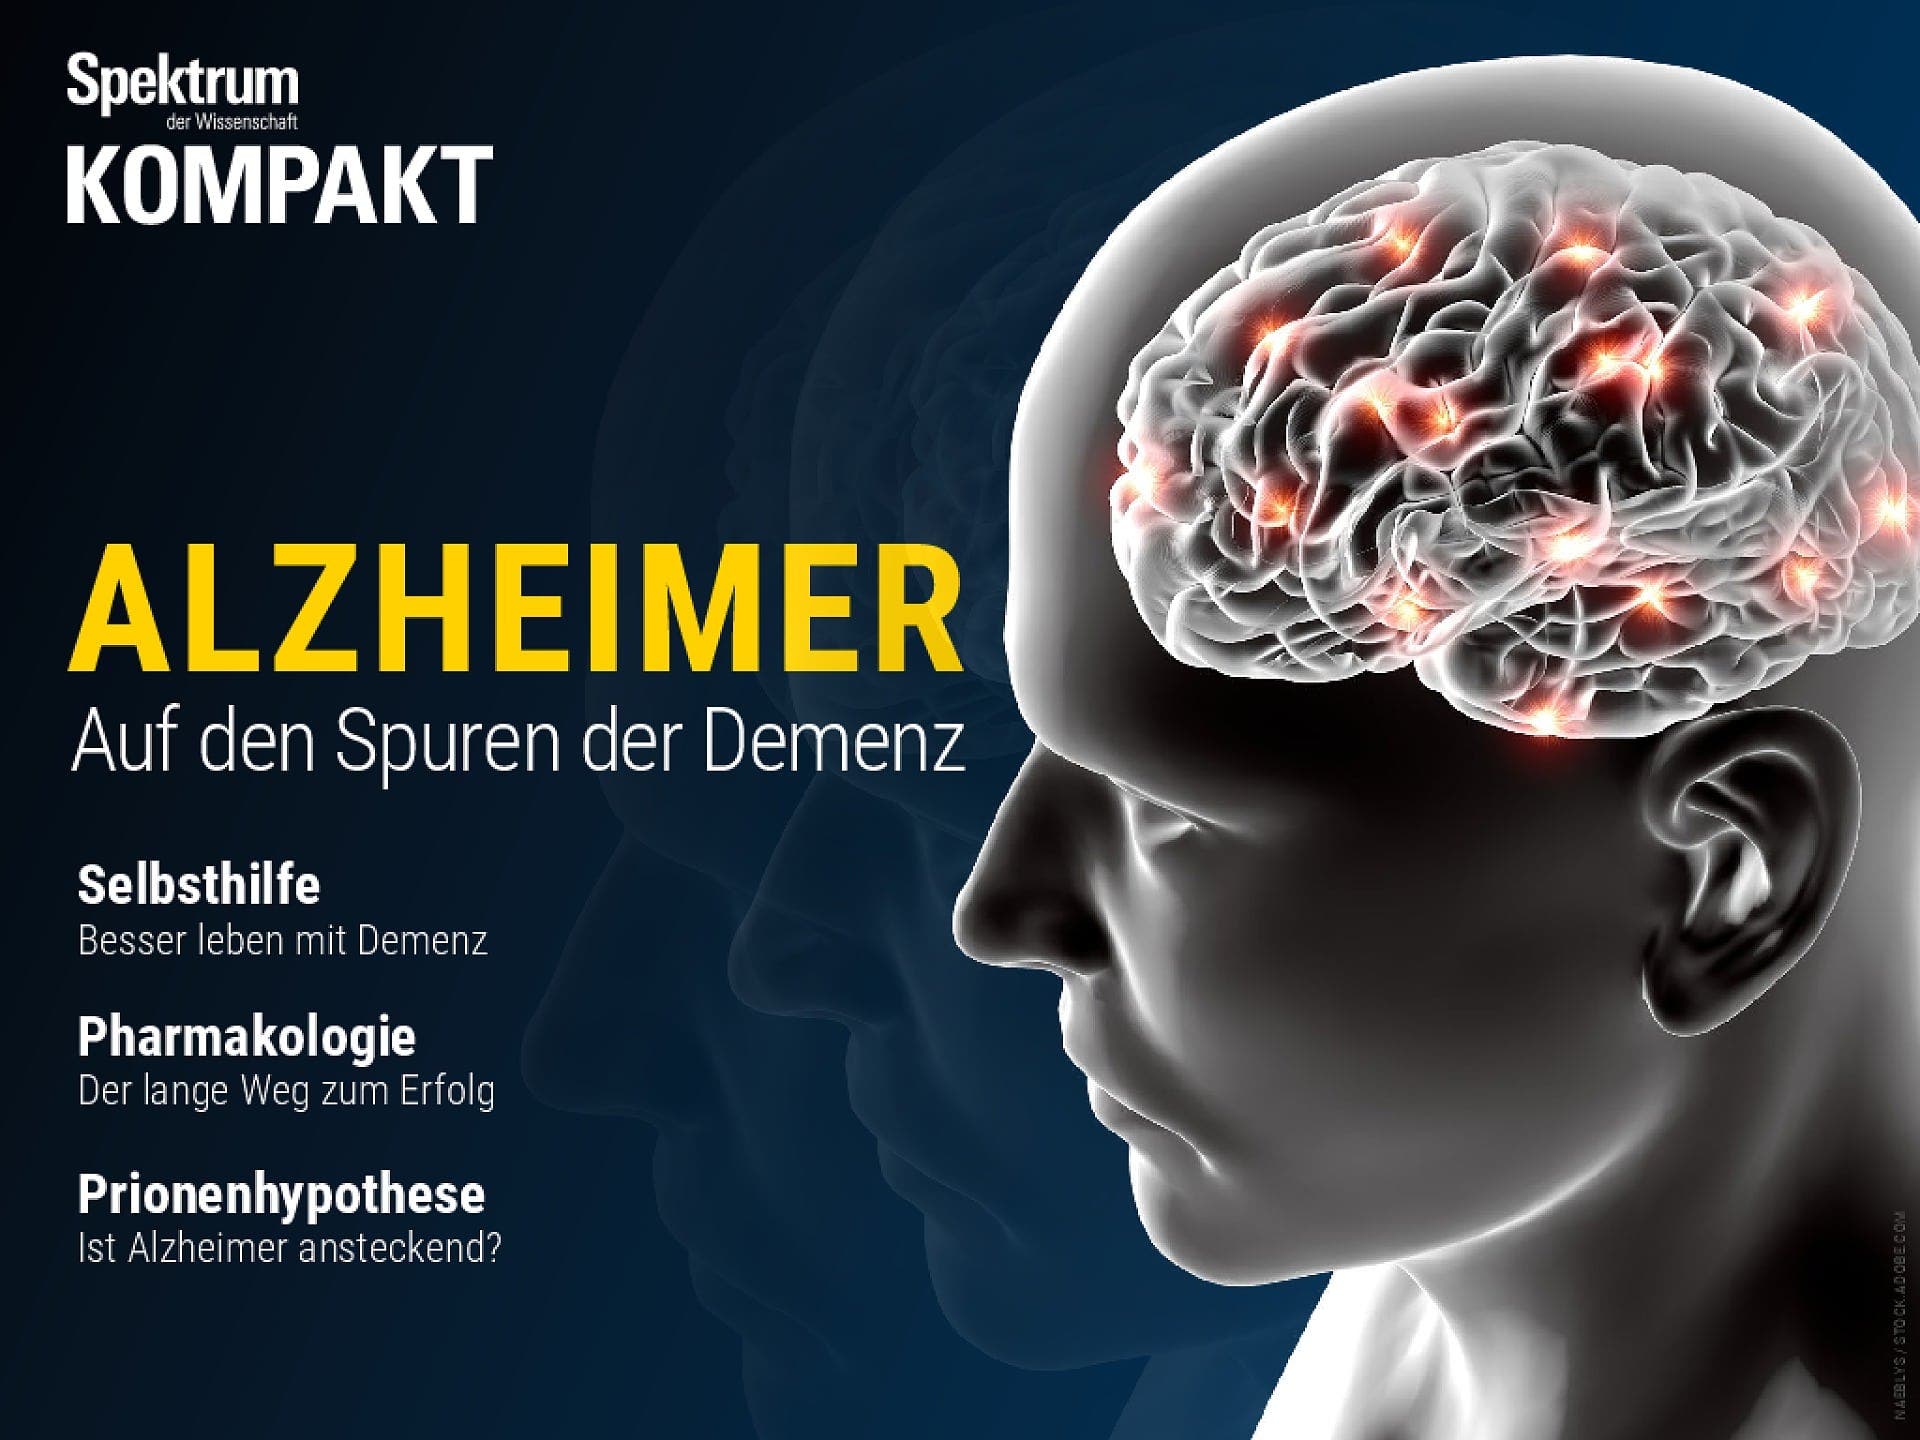 Alzheimer - Auf den Spuren der Demenz